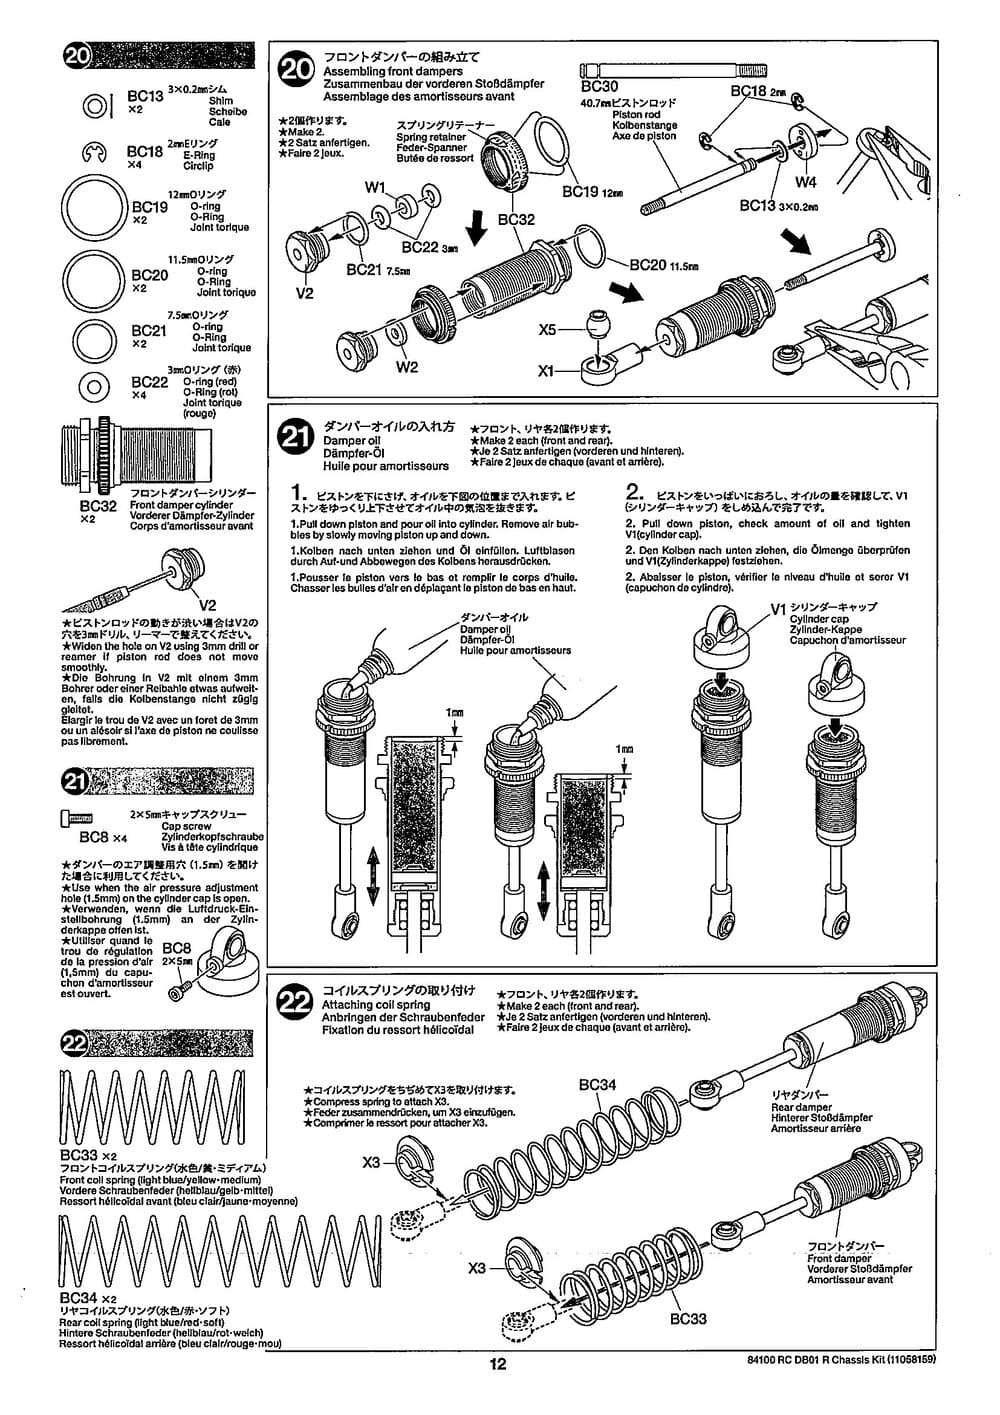 Tamiya - DB-01R Chassis - Manual - Page 12